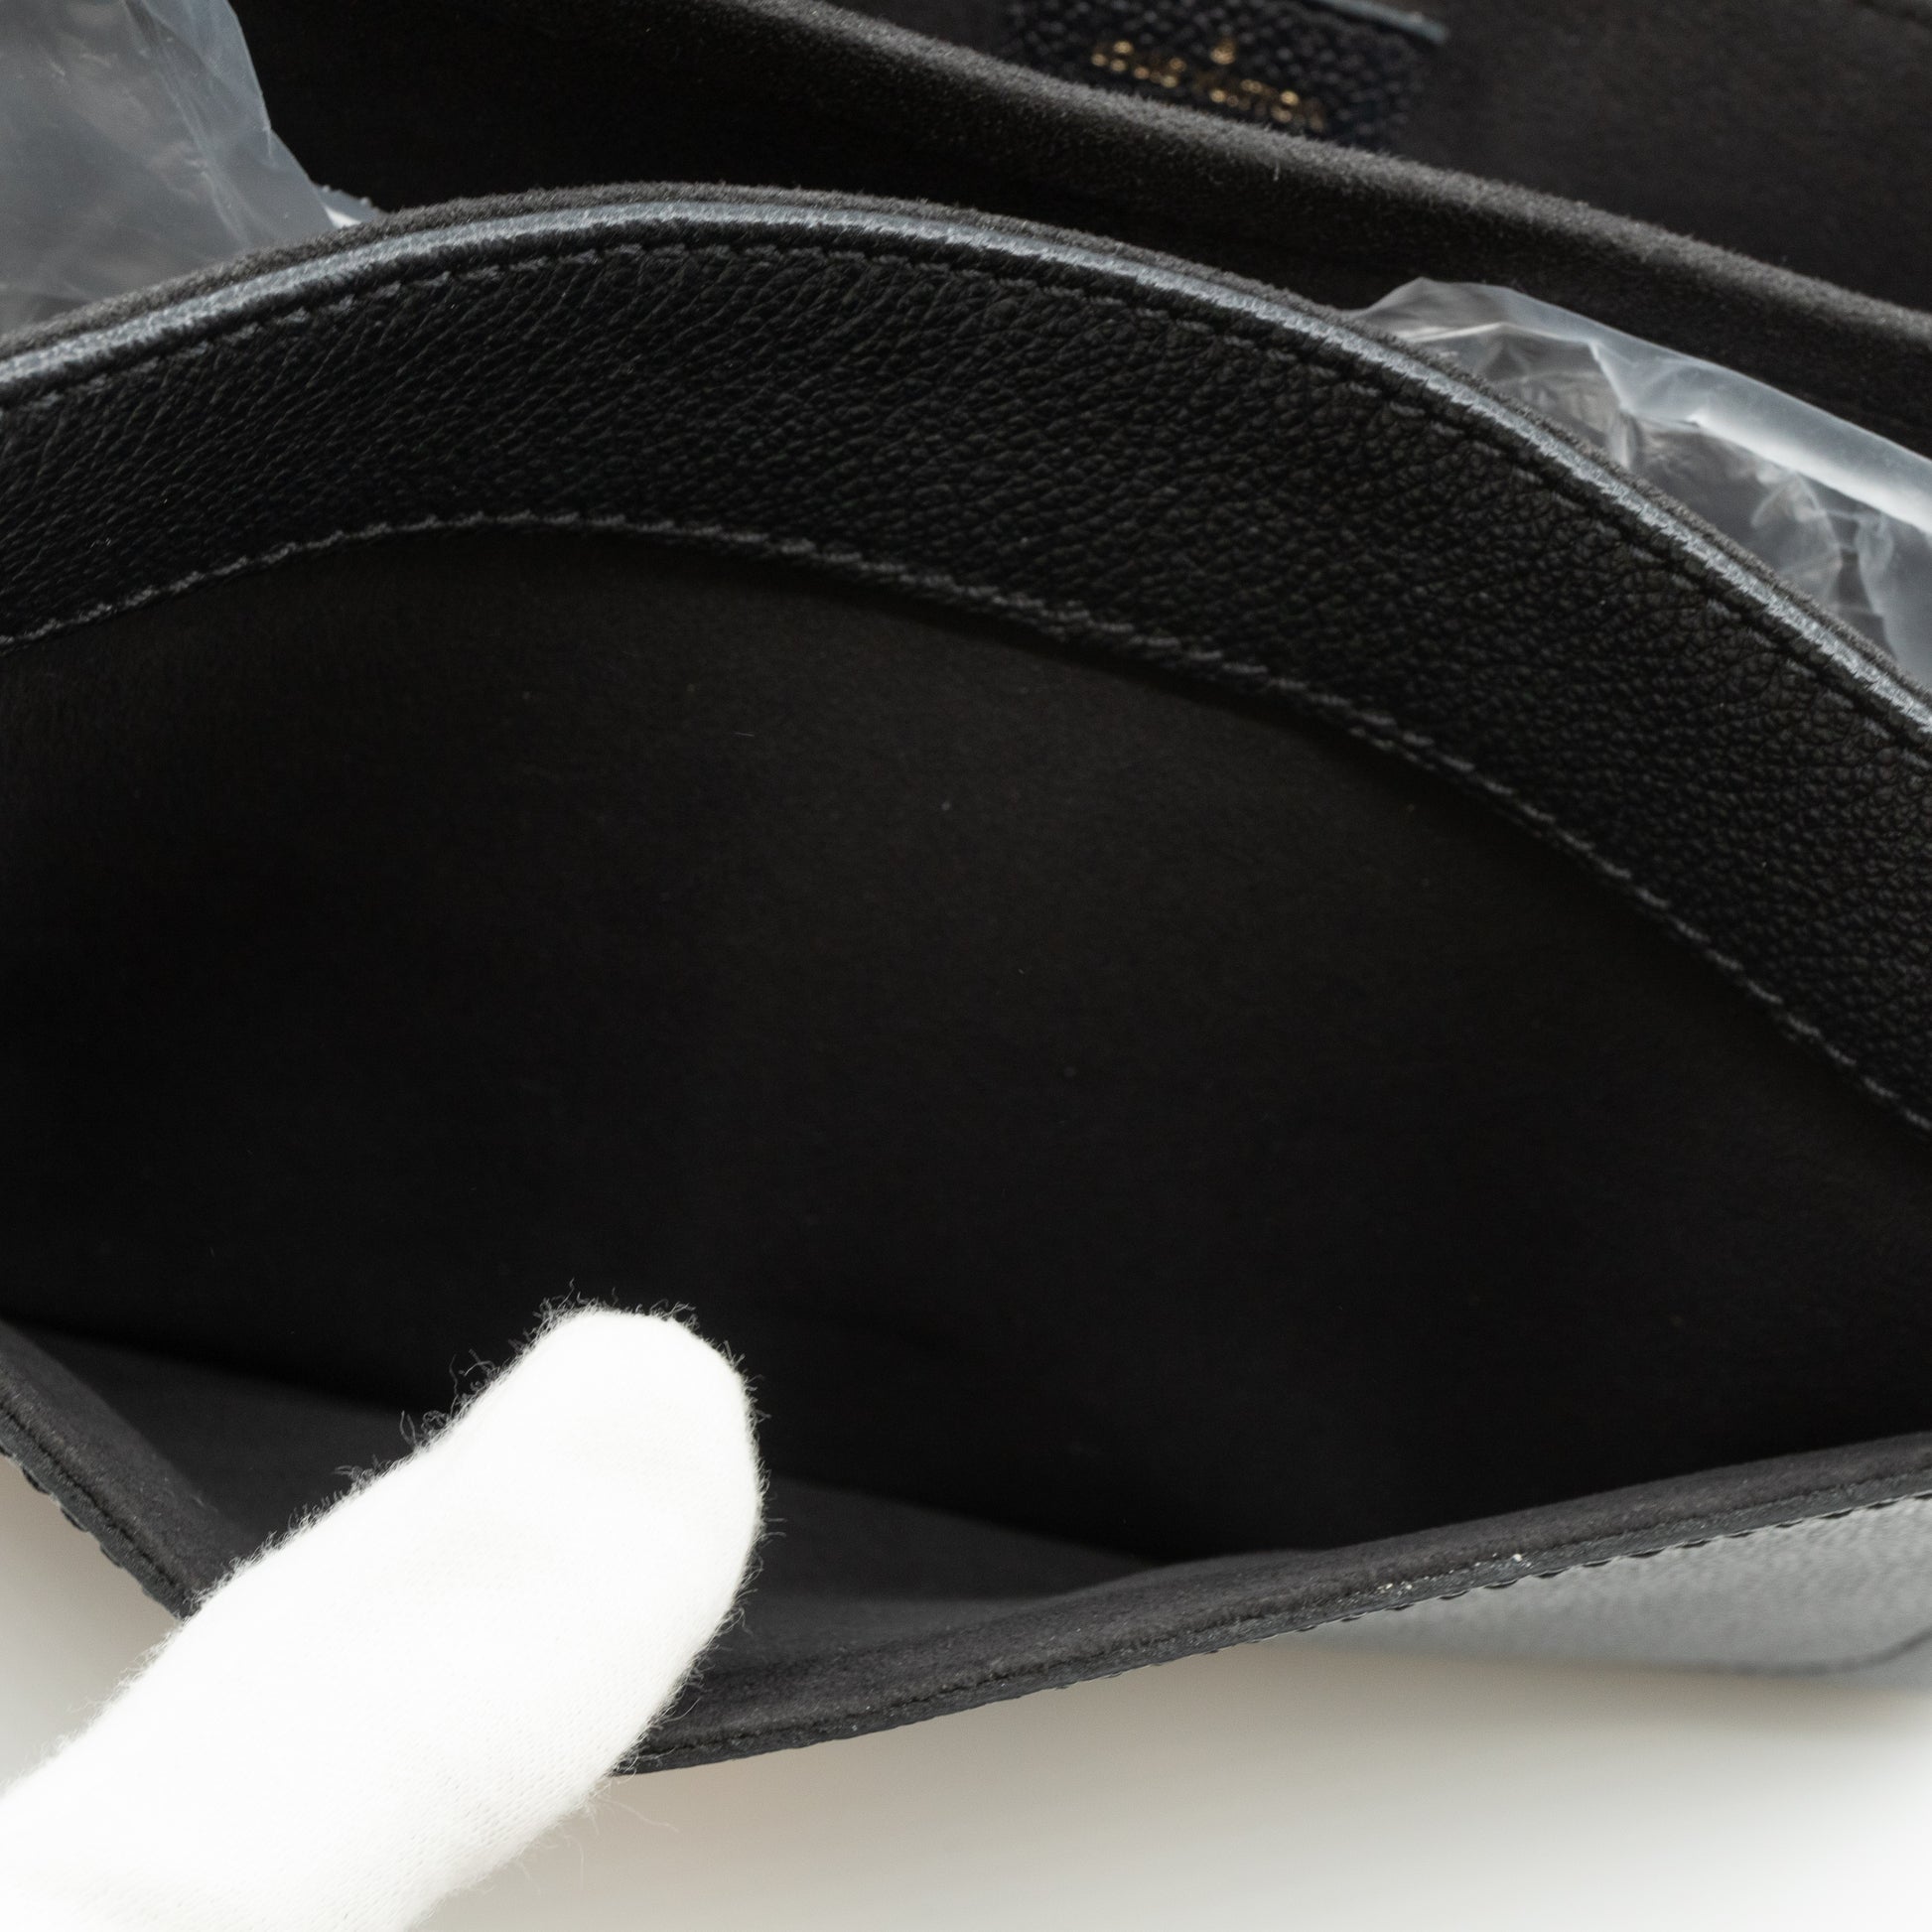 St Germain MM Empreinte – Keeks Designer Handbags